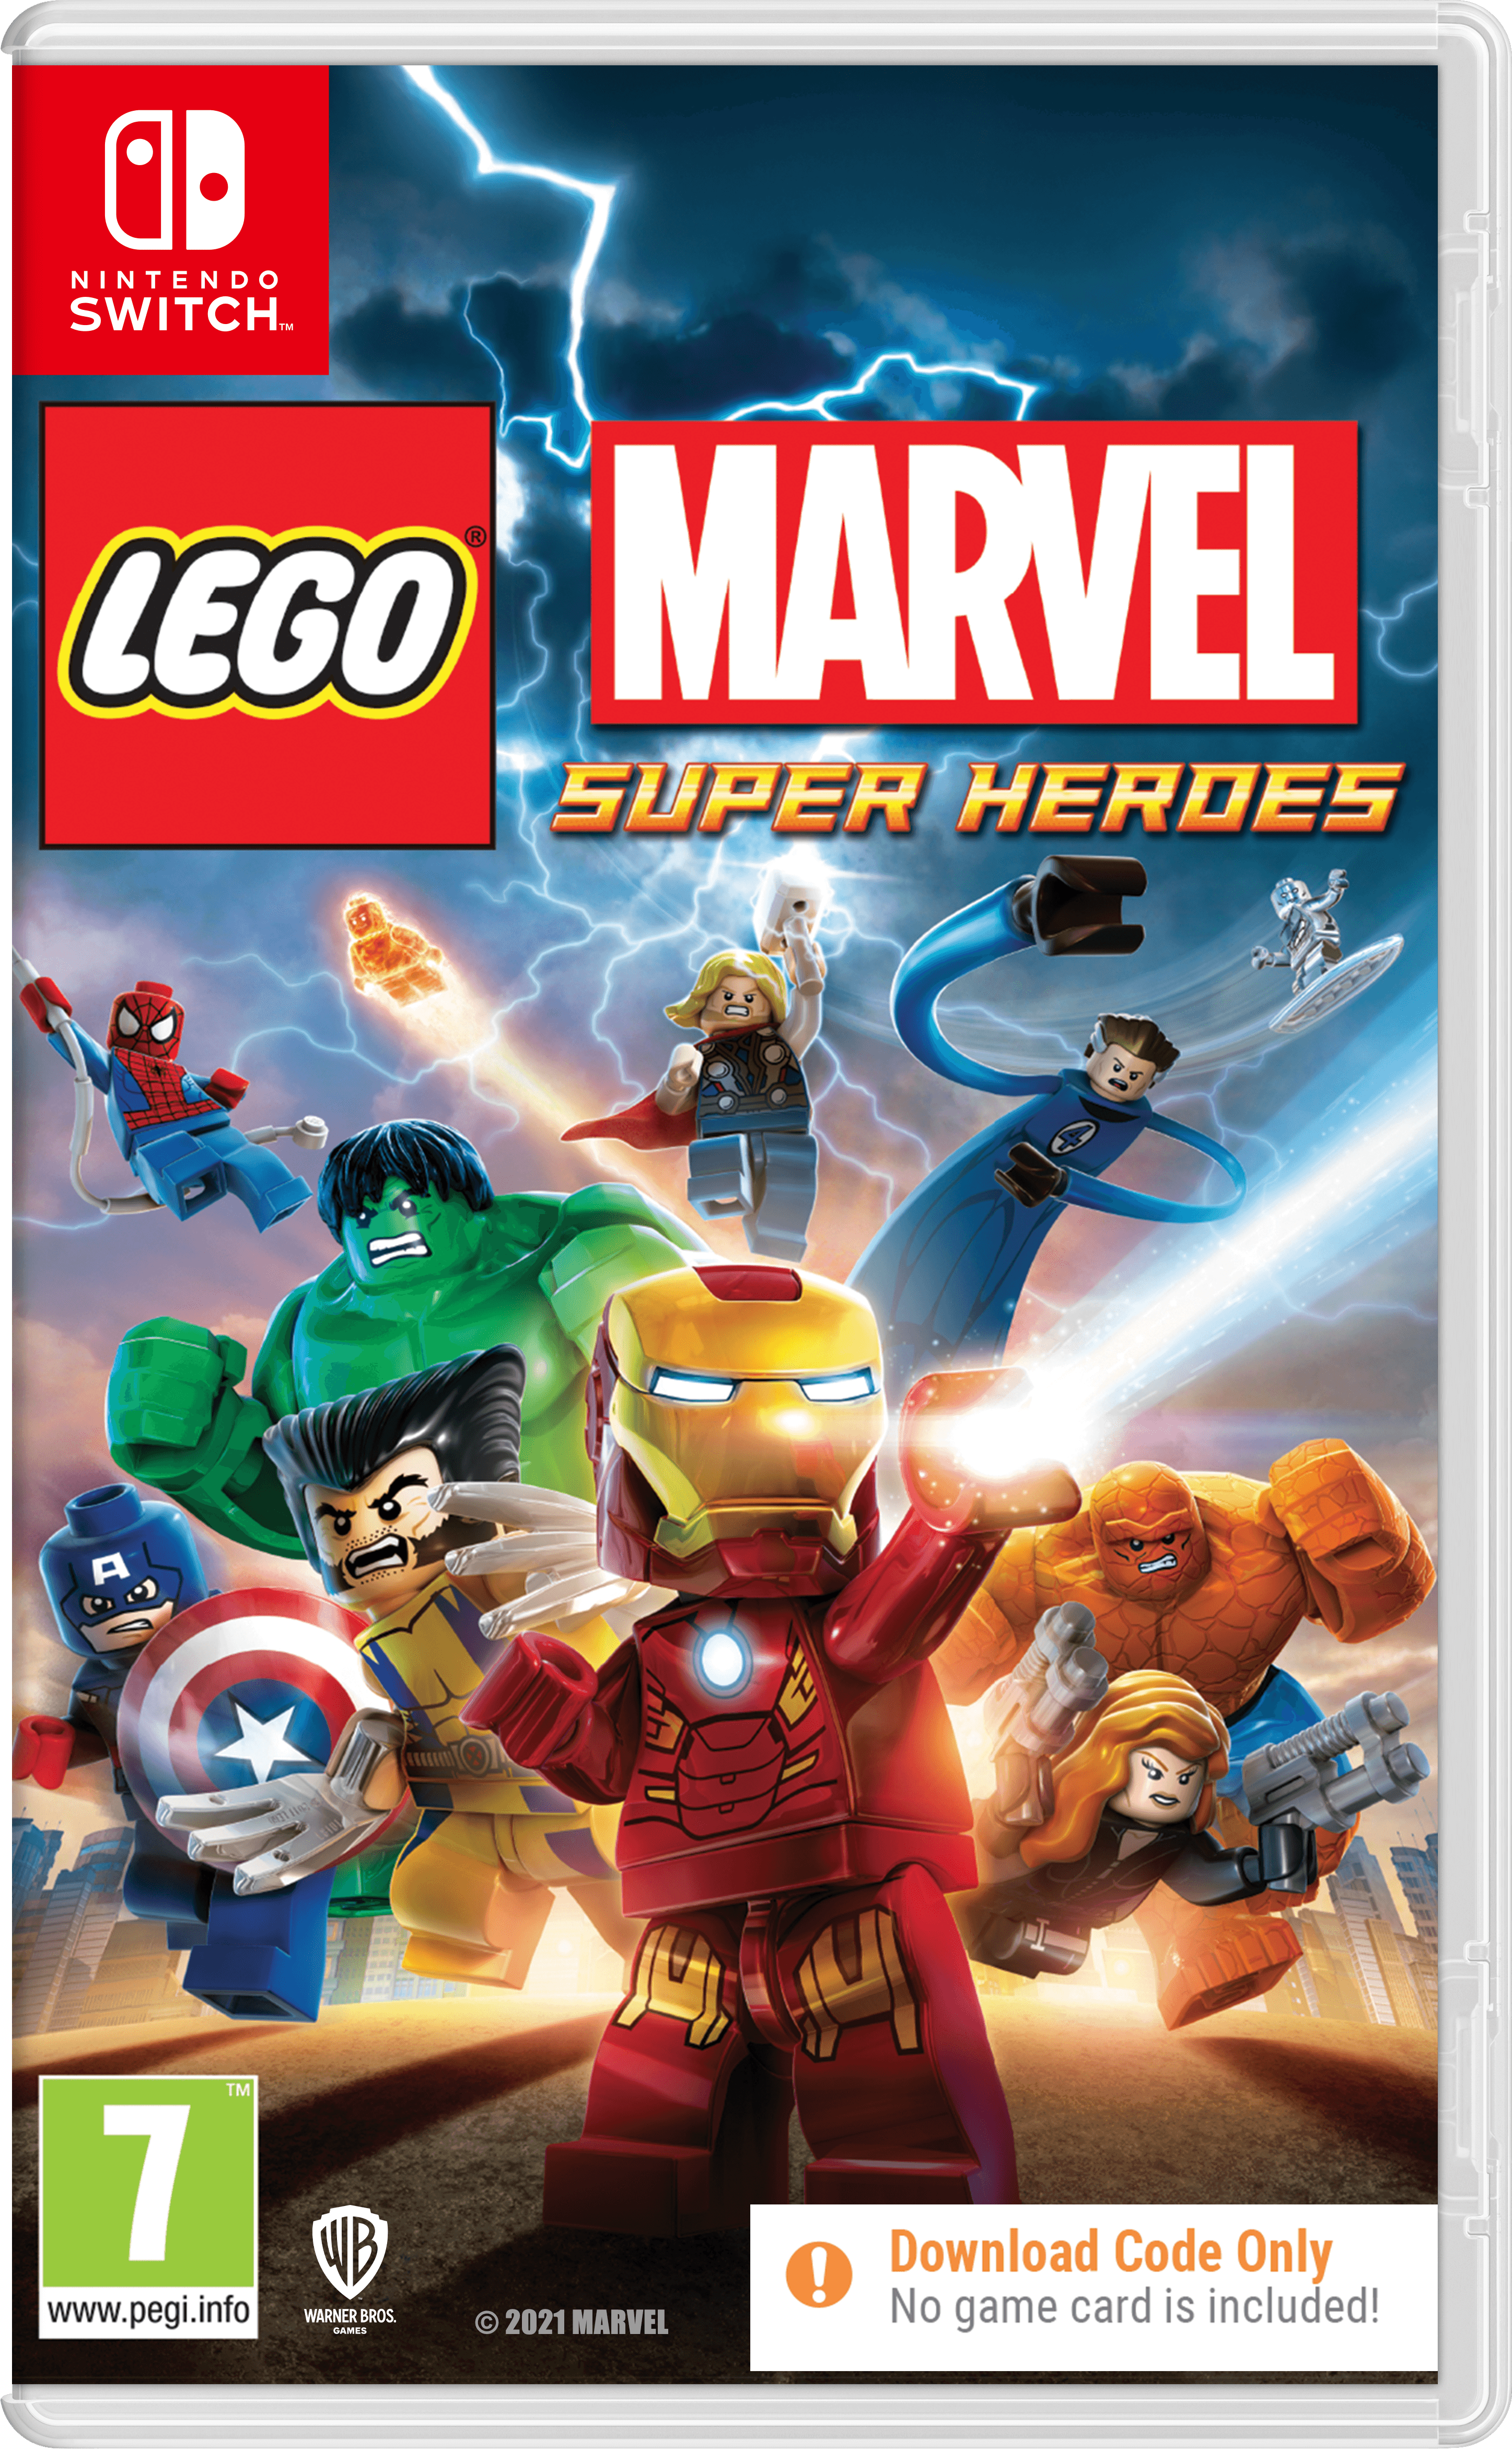 Lego Marvel Super Heroes Cib - Want a New Gadget